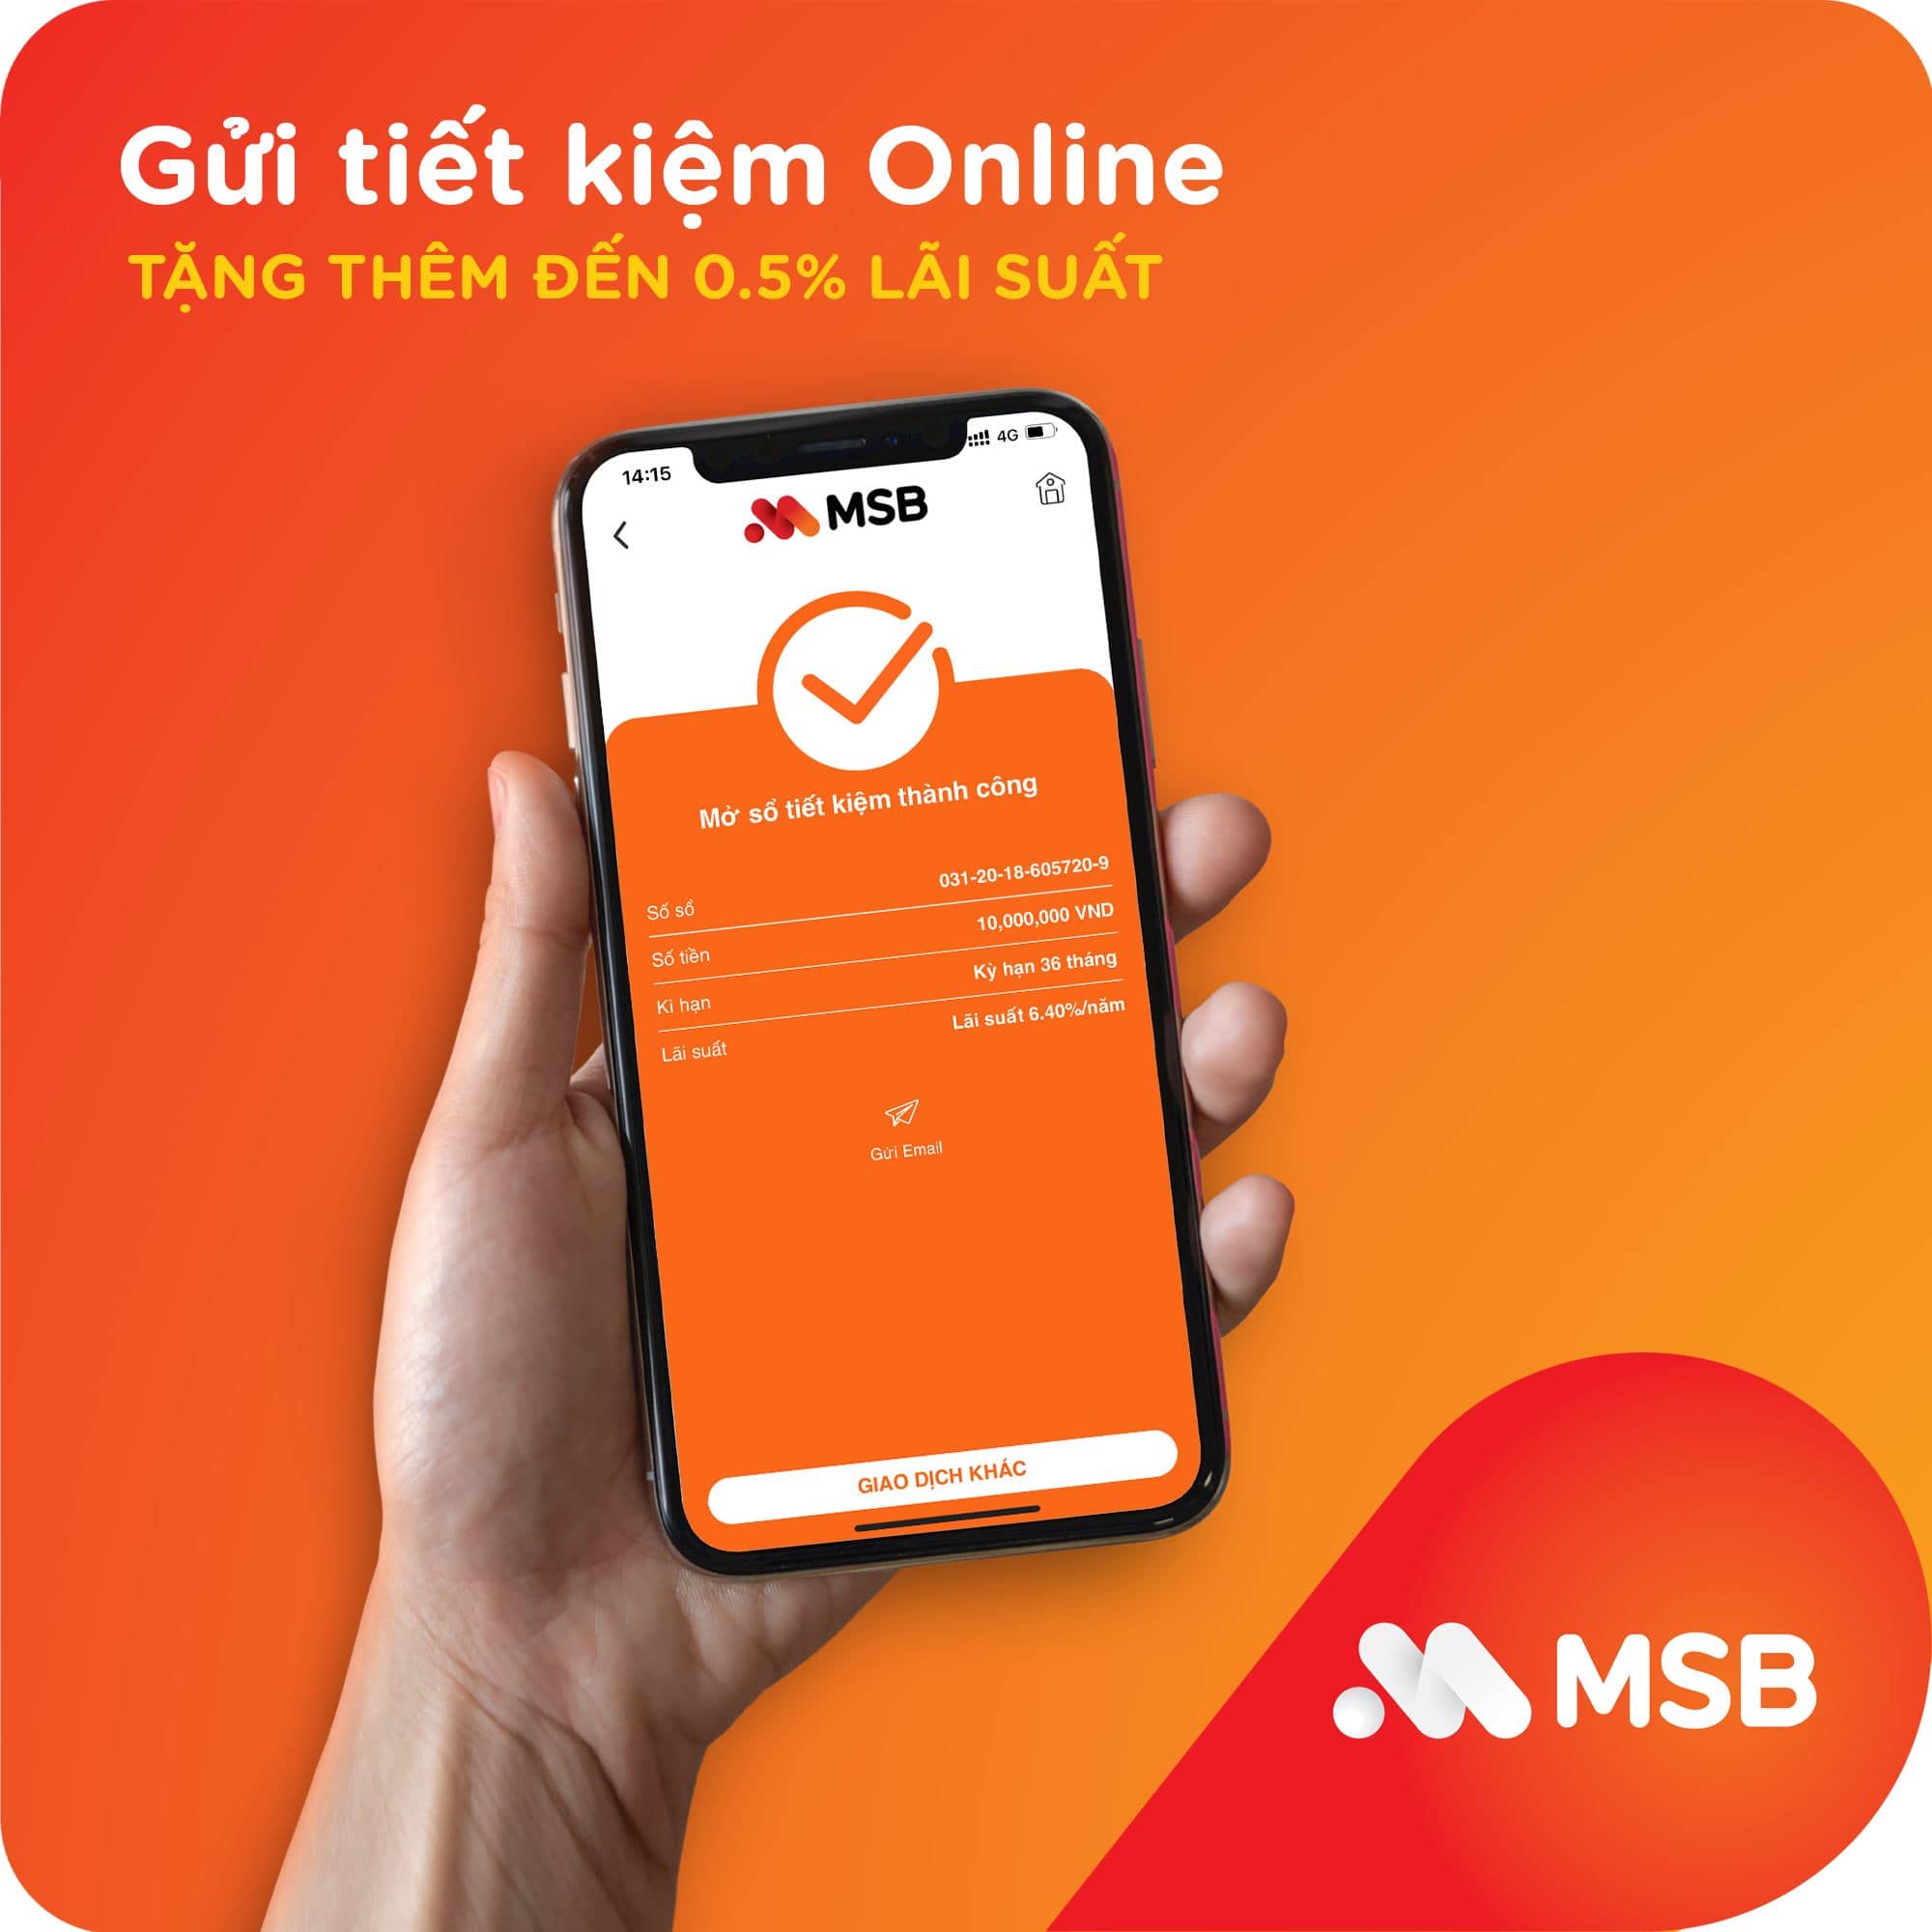 Hướng Dẫn Gửi Thêm Tiền Vào Tài Khoản Tiết Kiệm Online MSB